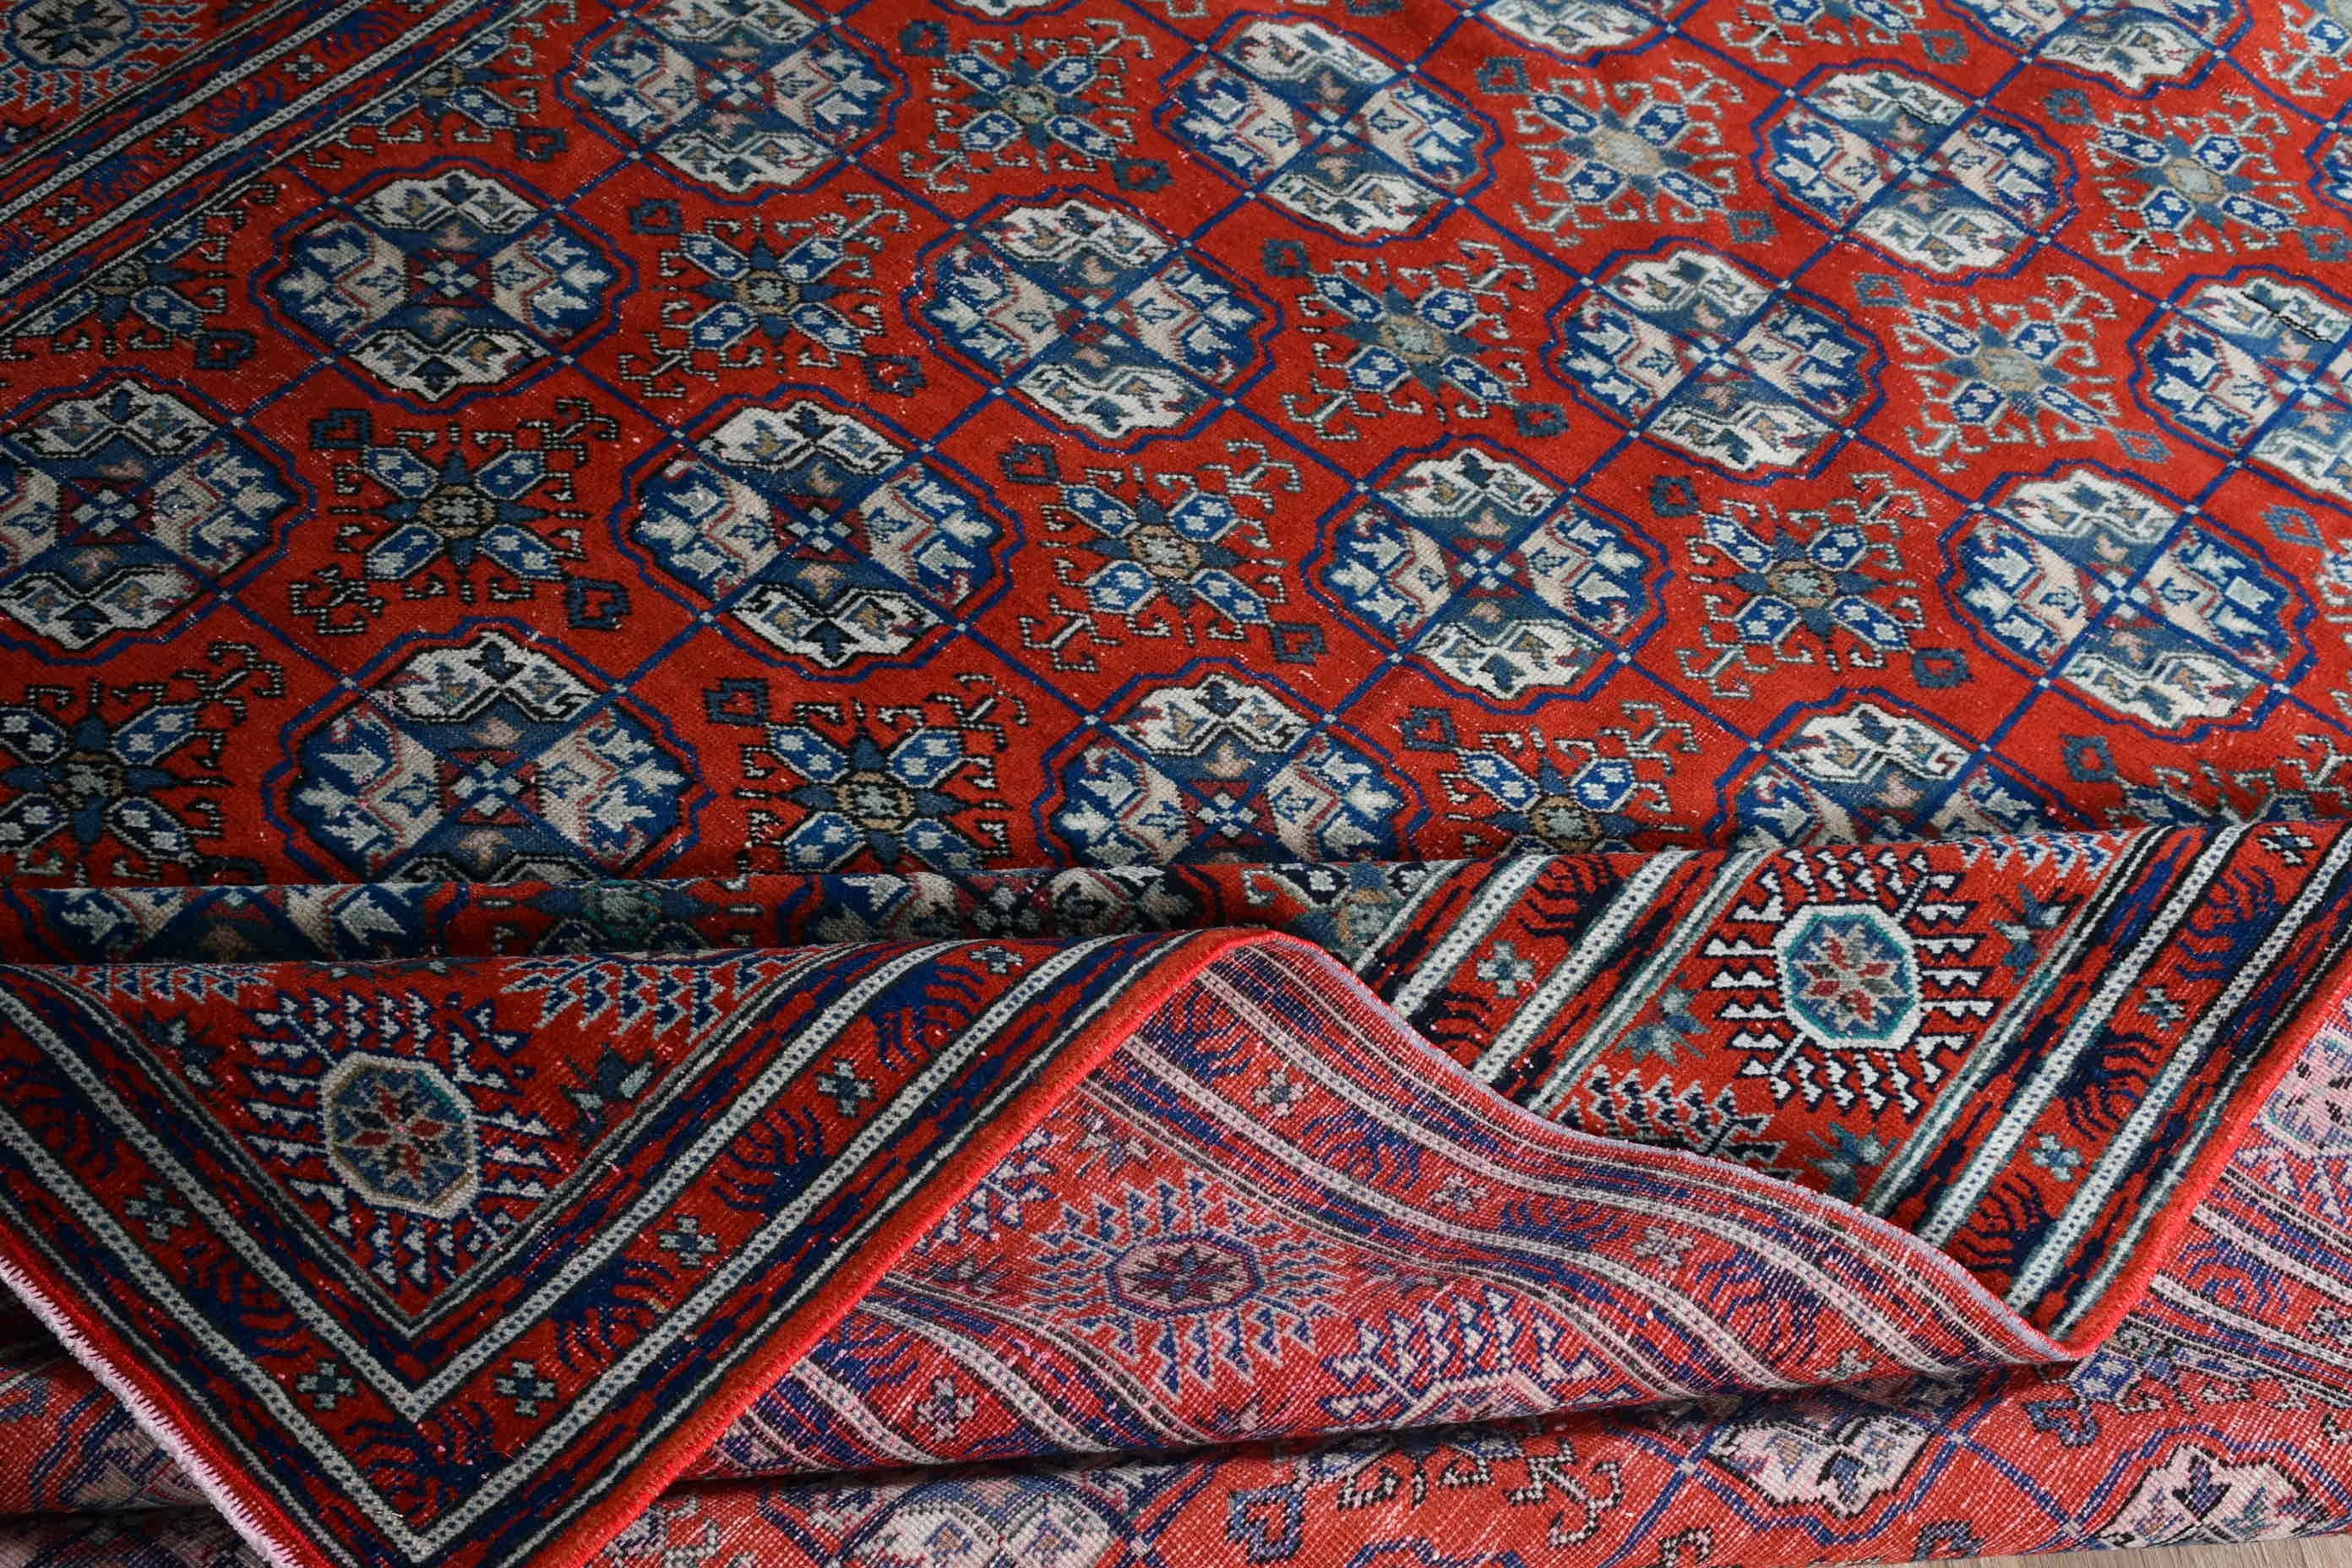 Floor Rug, Rugs for Bedroom, Vintage Rug, Salon Rug, Turkish Rugs, Red Oushak Rugs, Bedroom Rugs, 6.5x9.7 ft Large Rug, Large Area Rug Rugs